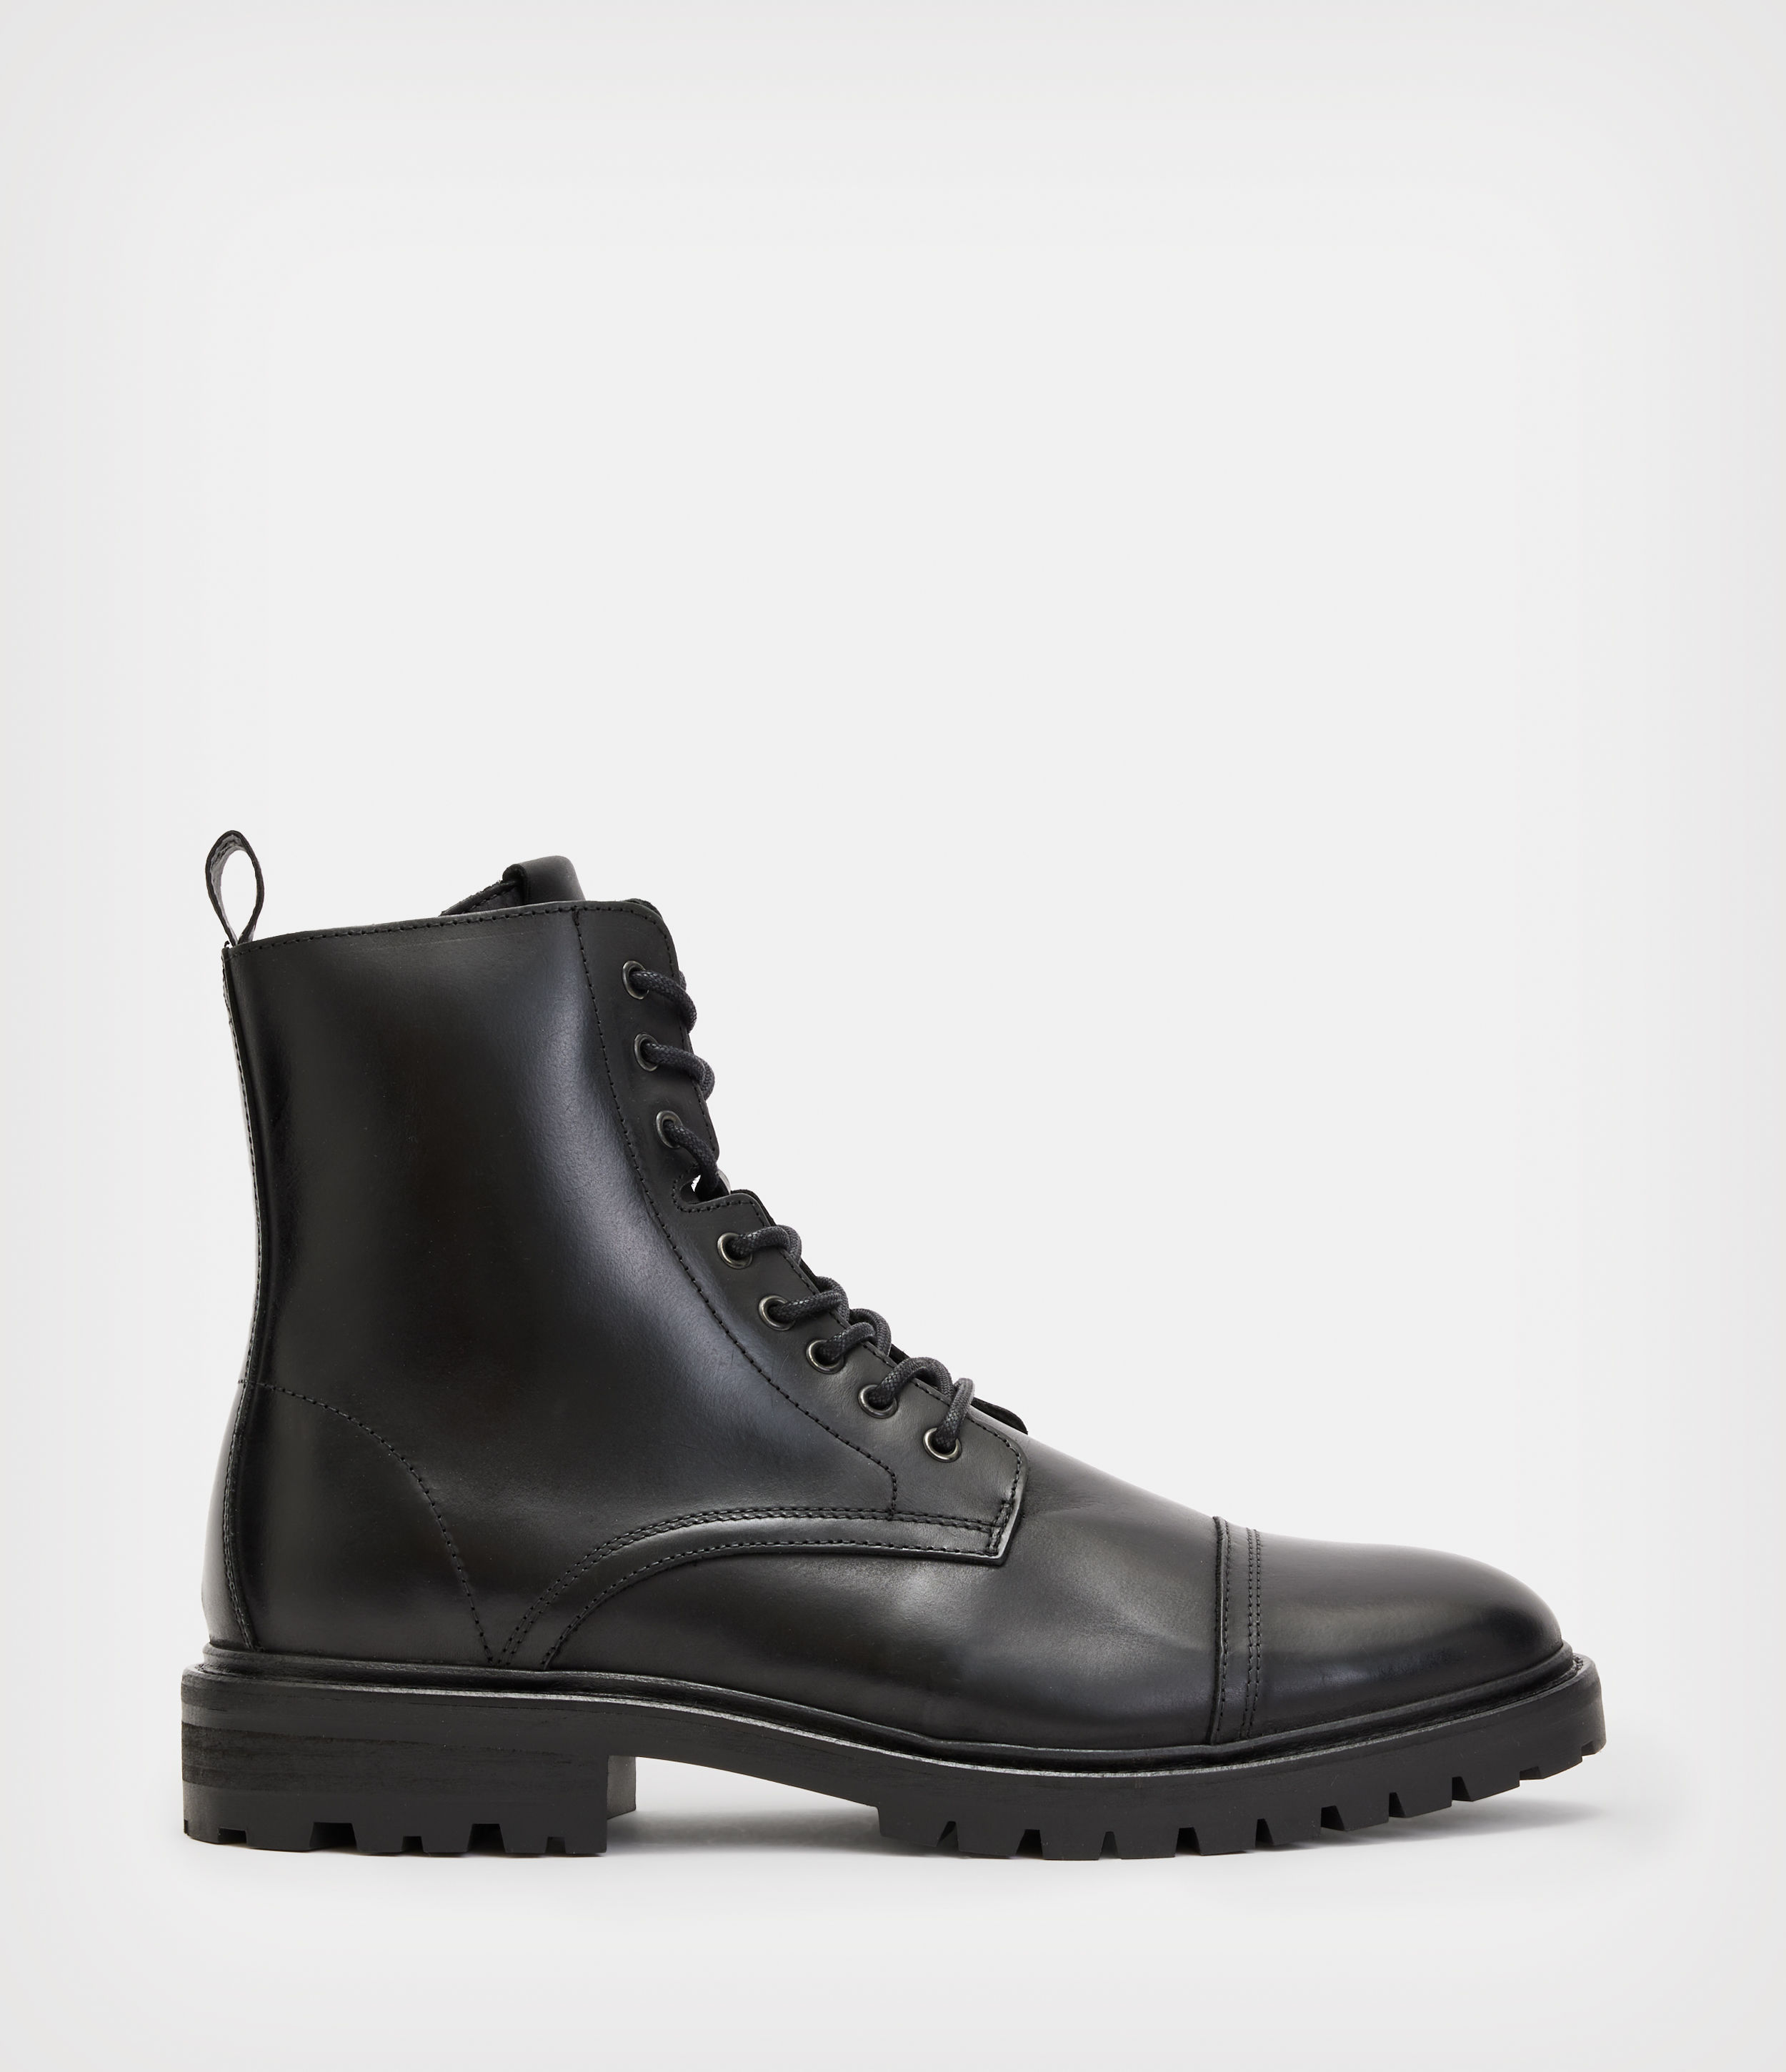 AllSaints Men’s Suede Piero Leather Boots, Black, Size: UK 7/US 8/EU 41